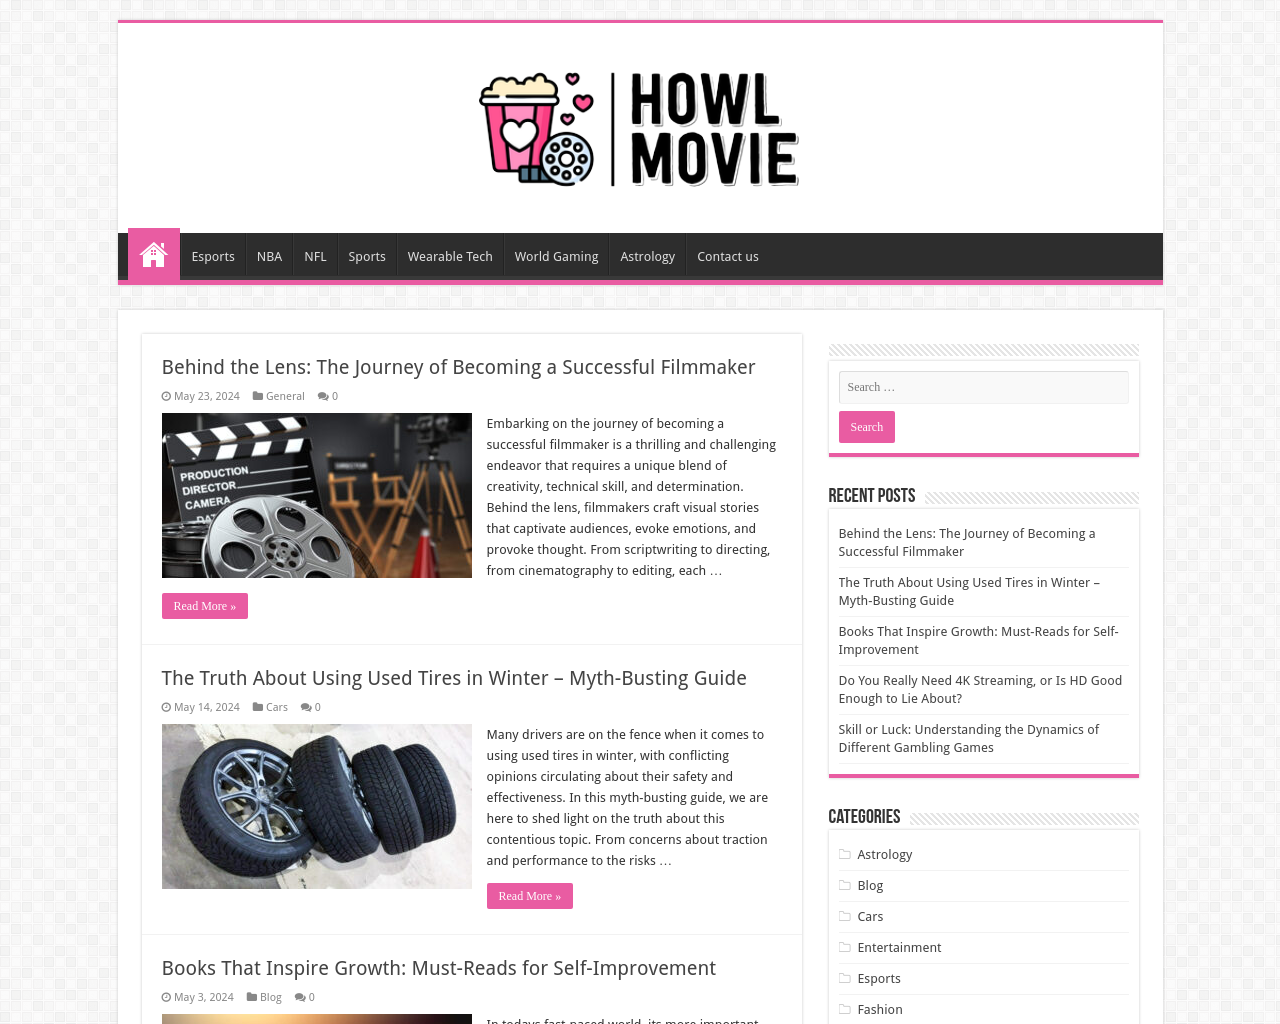 howl-movie.com